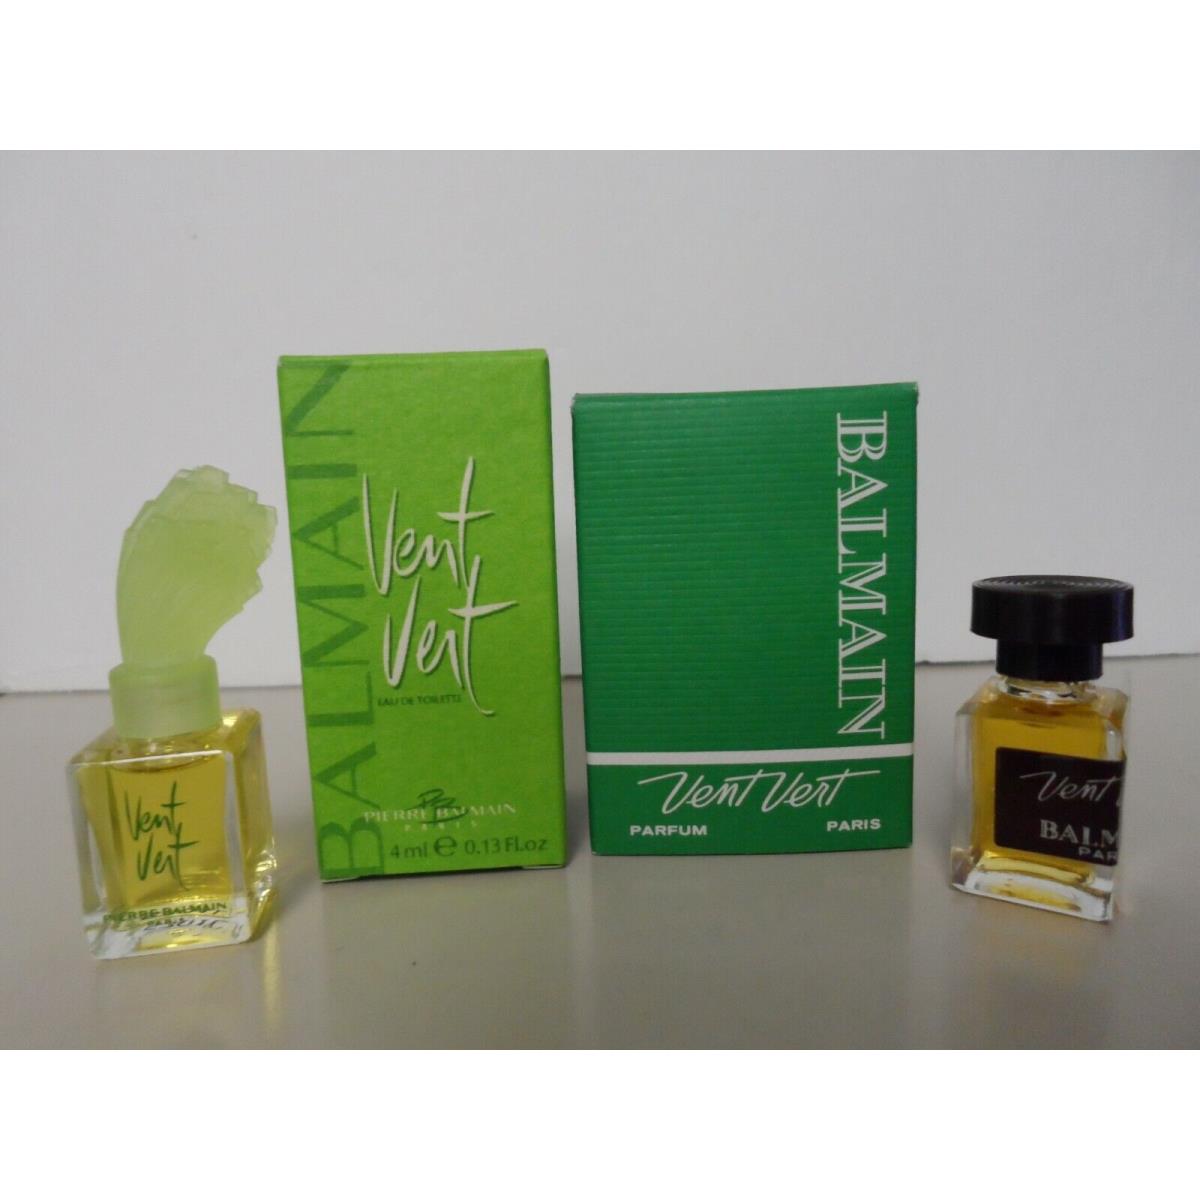 Vintage Vent Vert Balmain Mini Bottles Lot of 2 4ml Perfume + 4ml Edt